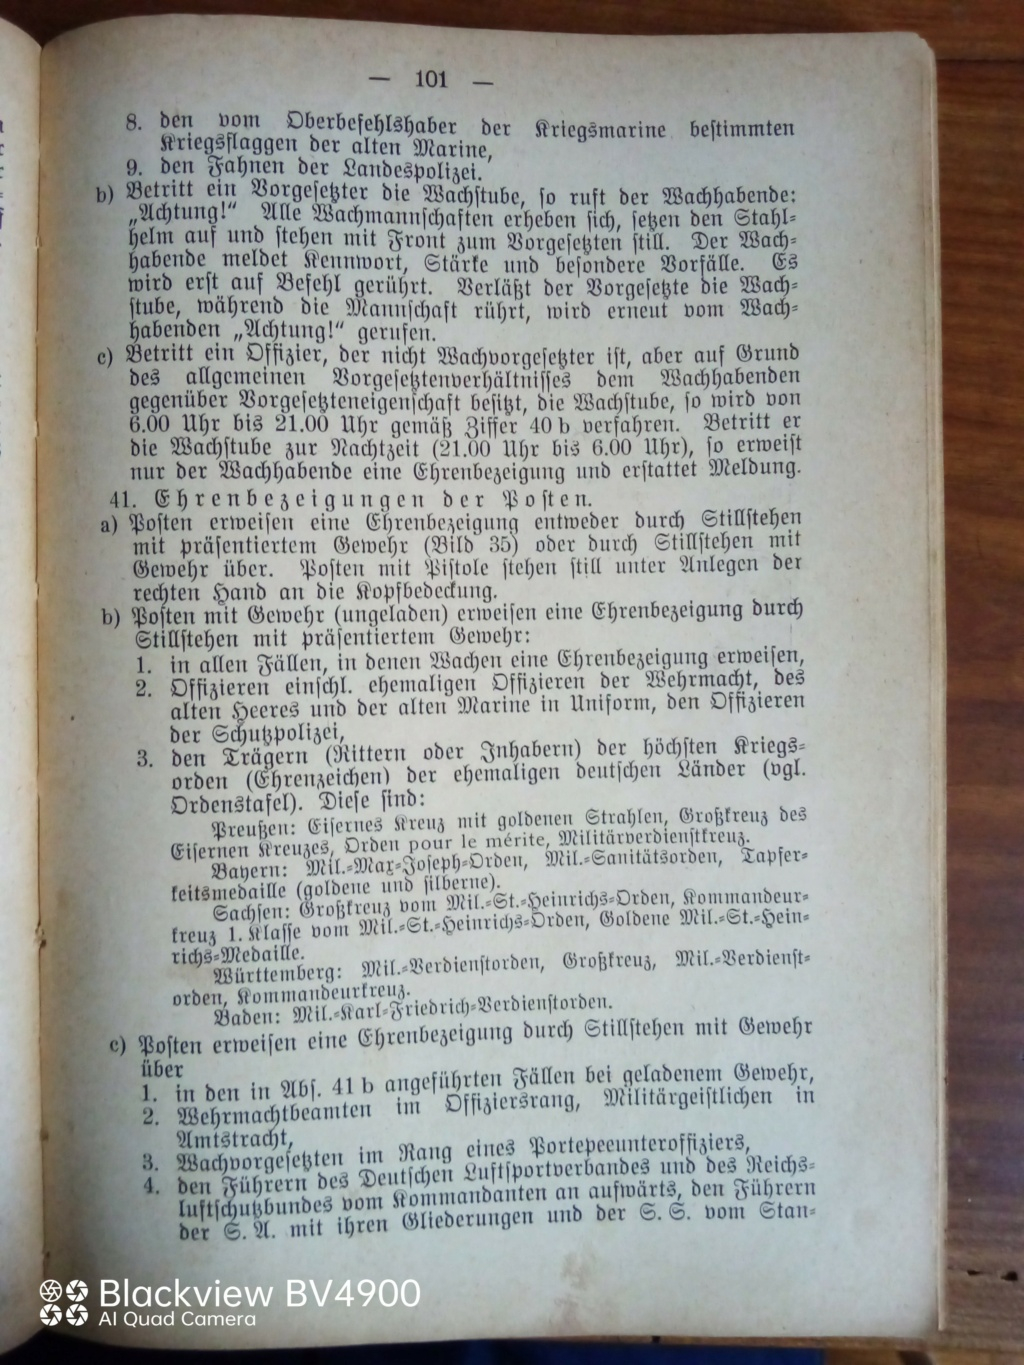 Handbucher der Luftwaffe - Page 2 Img_2170